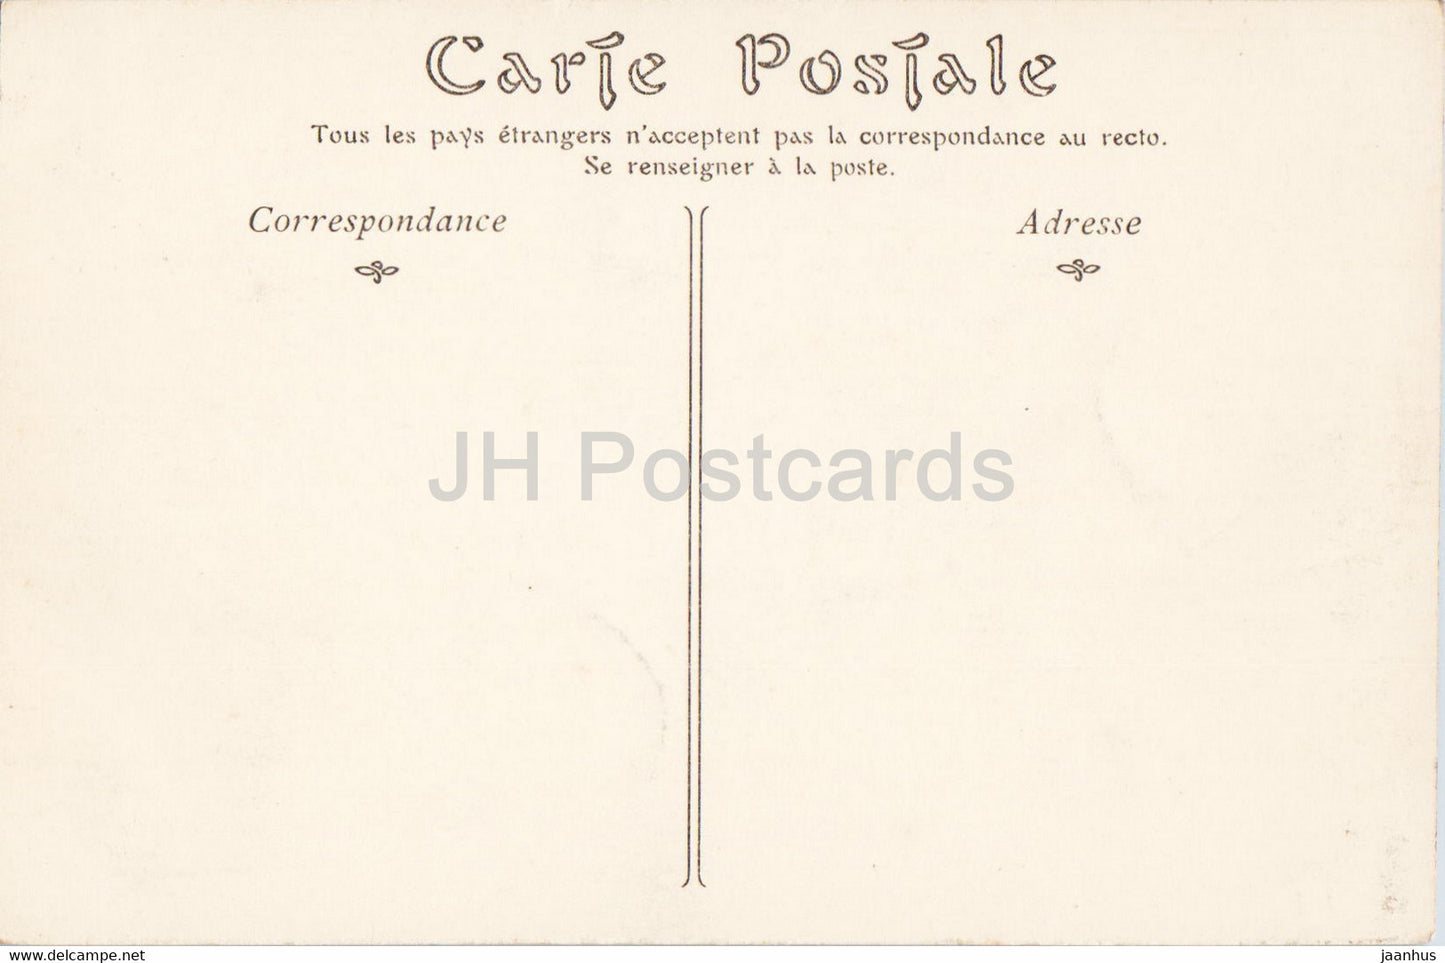 Paris - Le Jardin du Palais Royal - 128 - carte postale ancienne - France - inutilisée